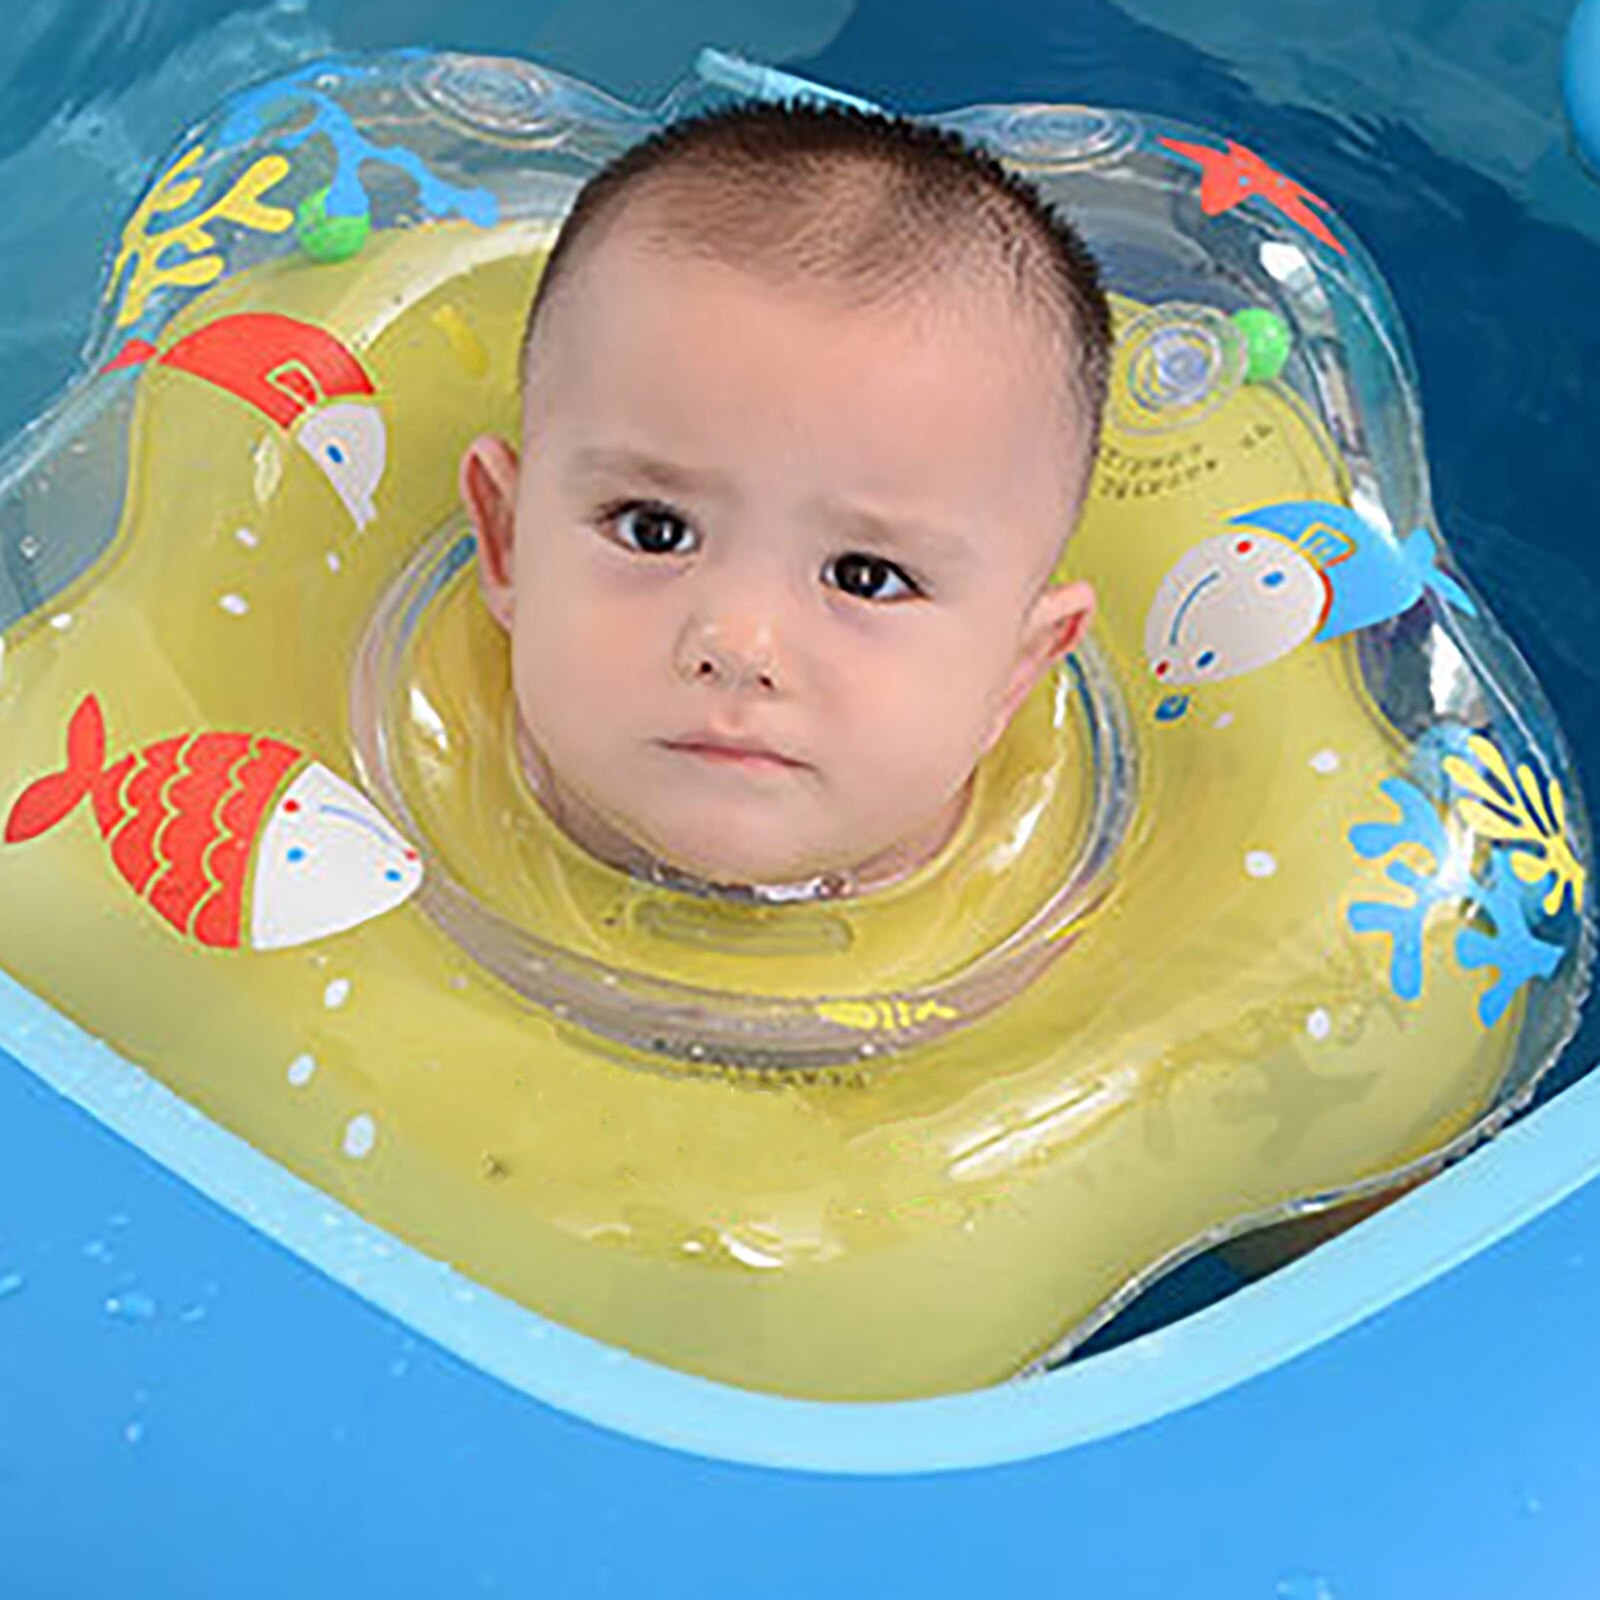 Nuoto accessori per bambini anello per collo tubo sicurezza galleggiante per neonati nuovo cerchio di nuotata per fare il bagno gonfiabile delfino gonfiabile acqua FE